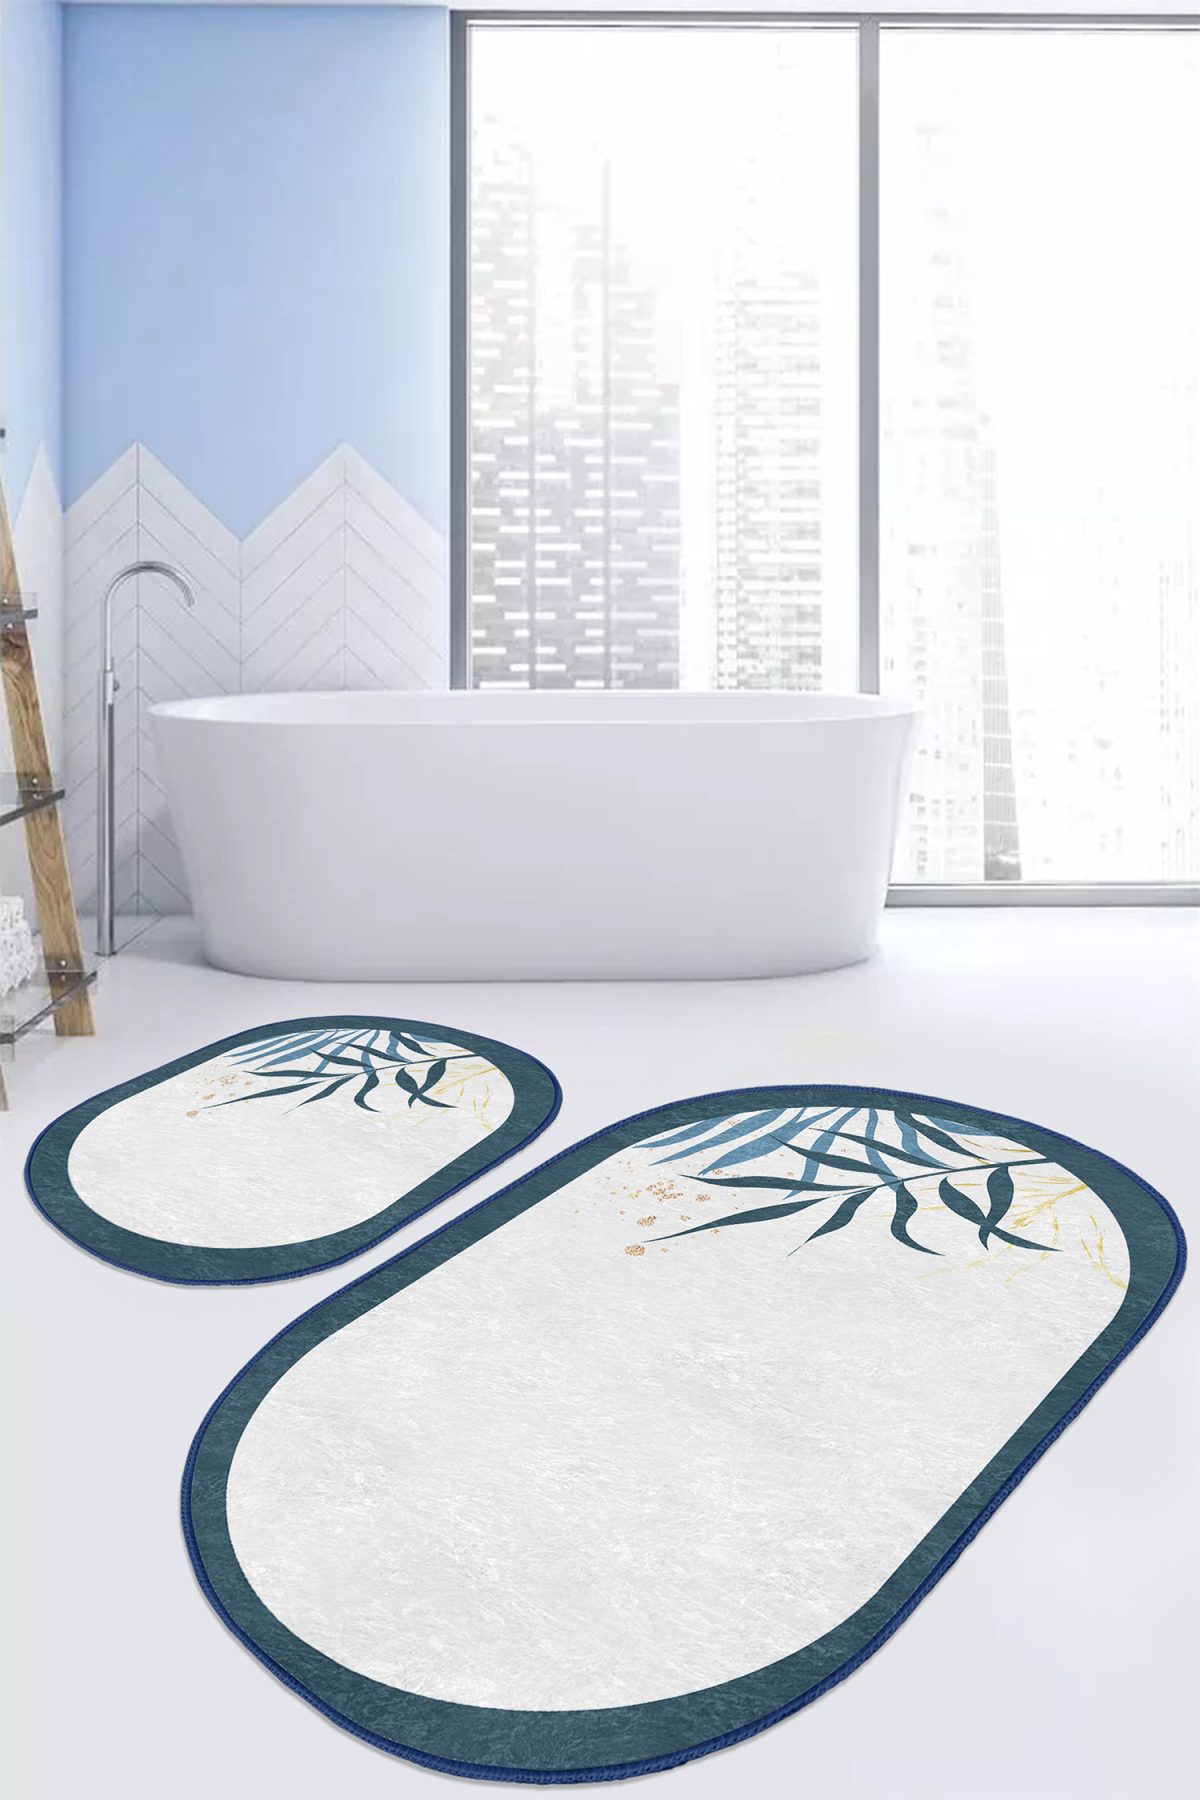 Beyaz Zeminde Renkli Yaprak Özel Tasarım Dijital Baskılı 2'li Oval Kaymaz Tabanlı Banyo & Mutfak Paspas Takımı Realhomes